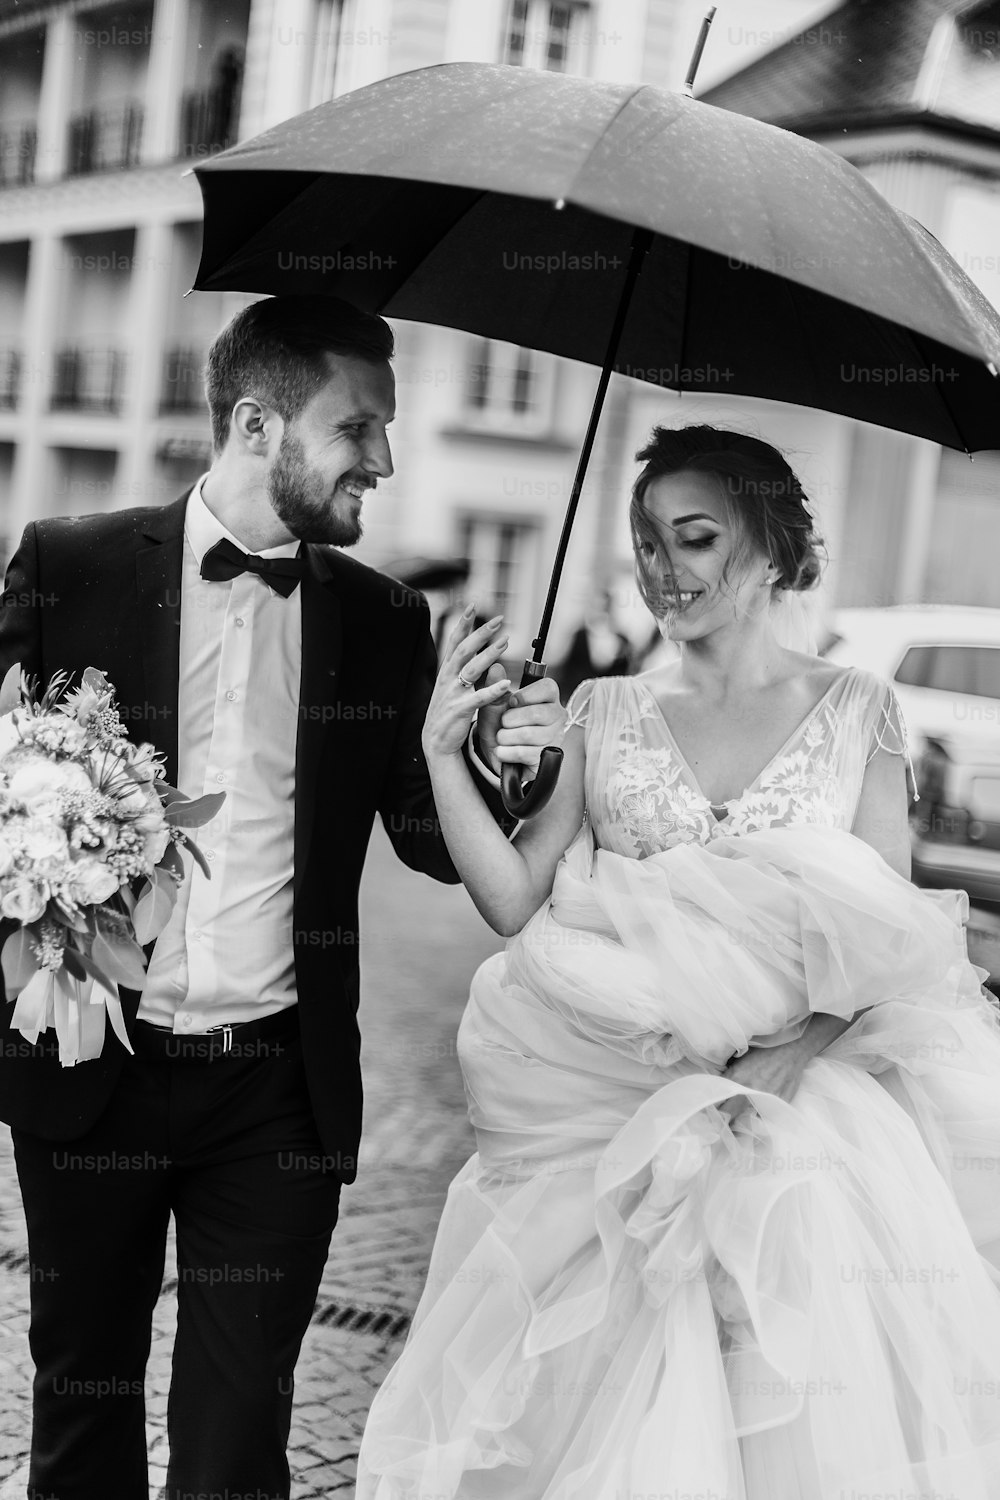 Wunderschöne Braut und stilvoller Bräutigam, die unter dem Regenschirm in einer regnerischen Straße spazieren gehen und lächeln. Sinnliches Hochzeitspaar, das sich umarmt. Romantische Momente des Brautpaares. Modernes Hochzeitsfoto